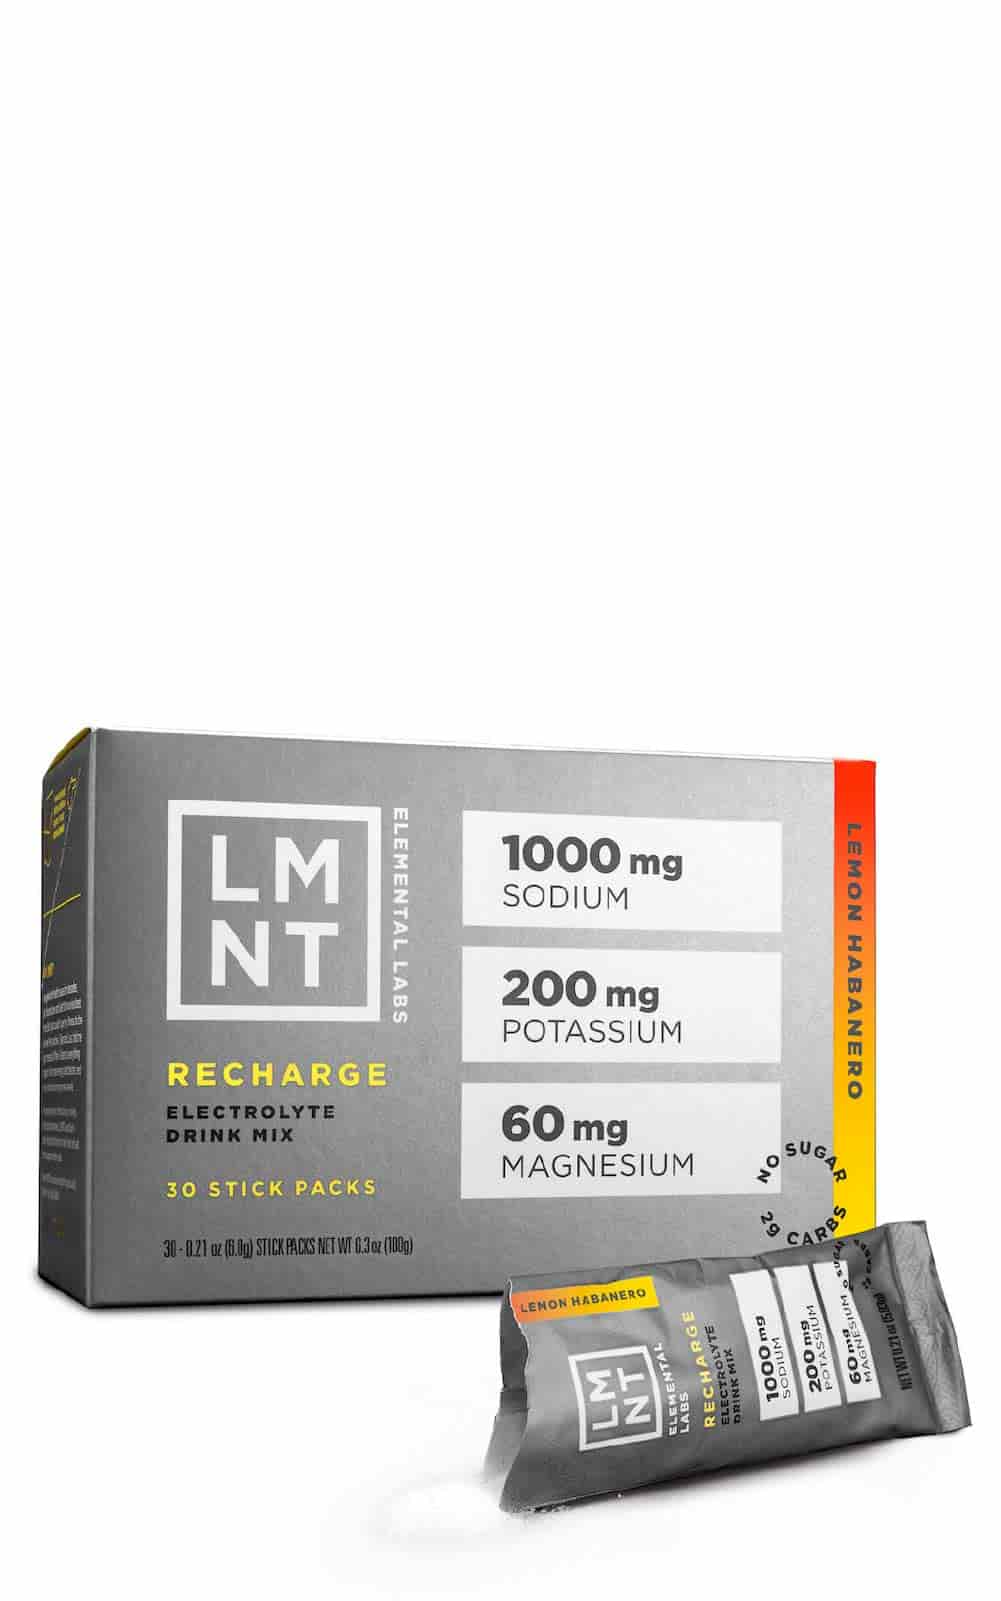 Koop LMNT Recharge Electrolyte Drink Mix Lemon Habanero bij LiveHelfi